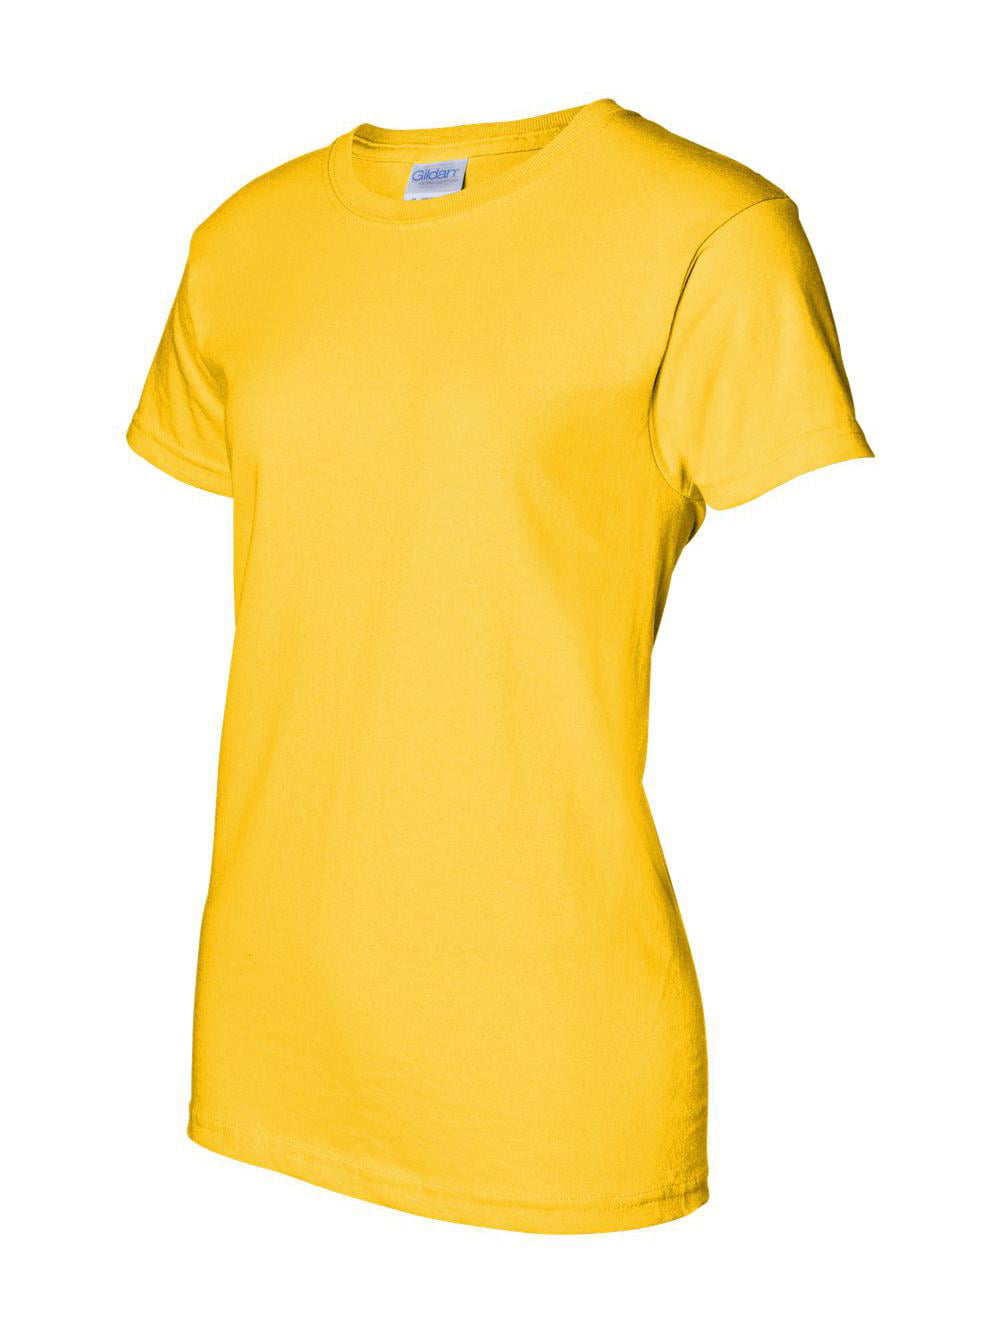 Gildan - Ultra Cotton Women's T-Shirt - 2000L - Walmart.com